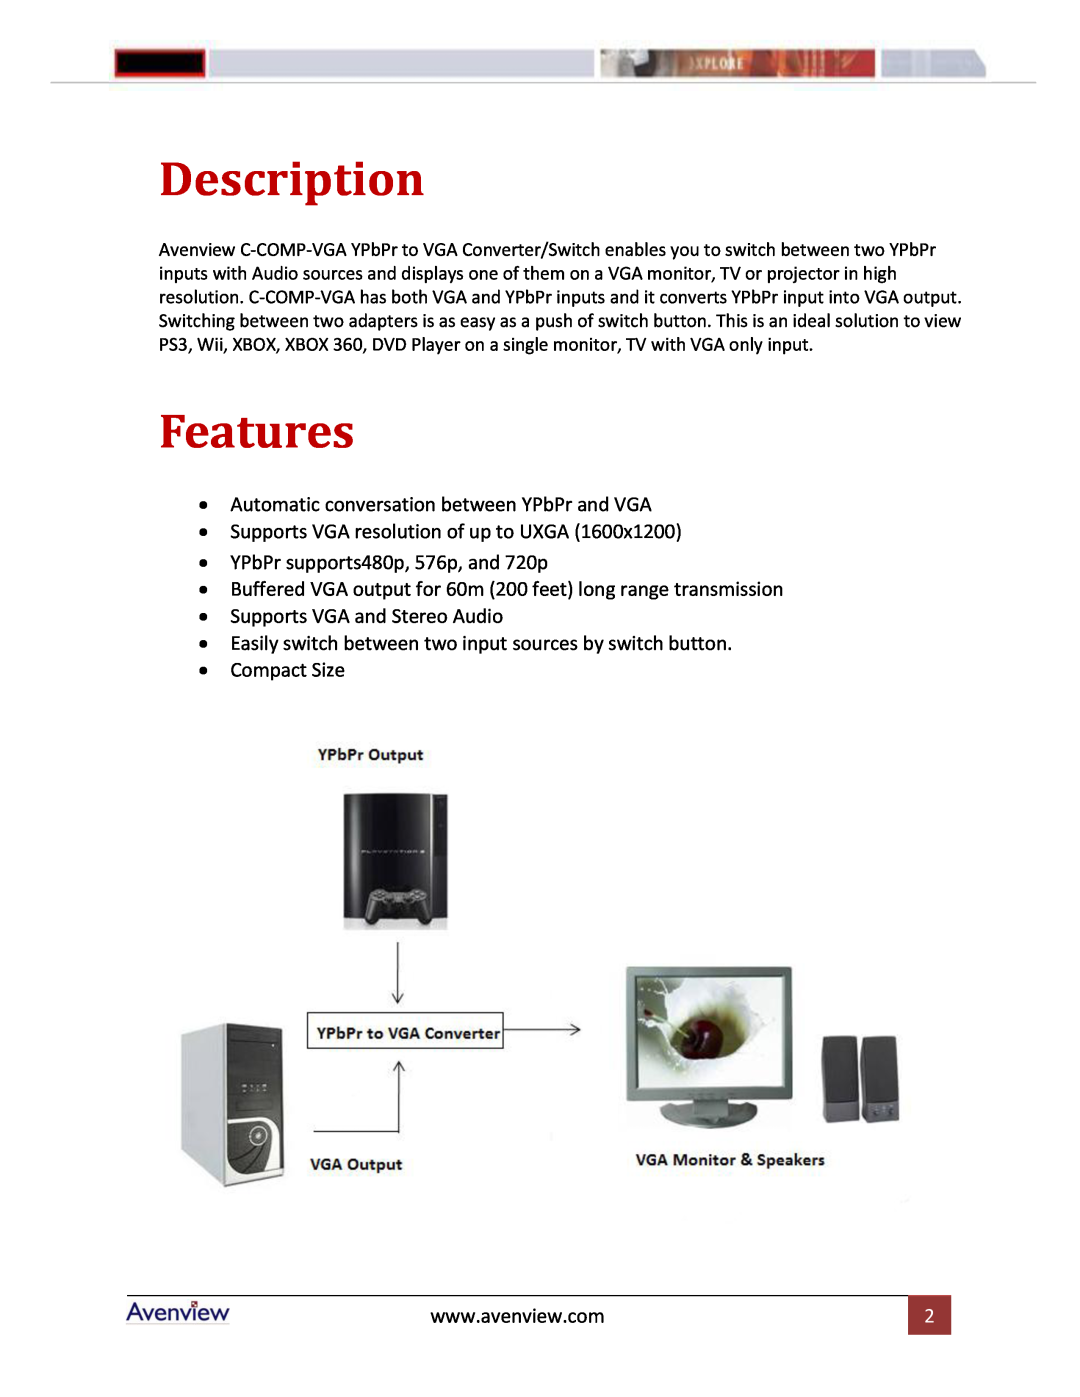 Avenview C-COMP-VGA manual Description, Features 